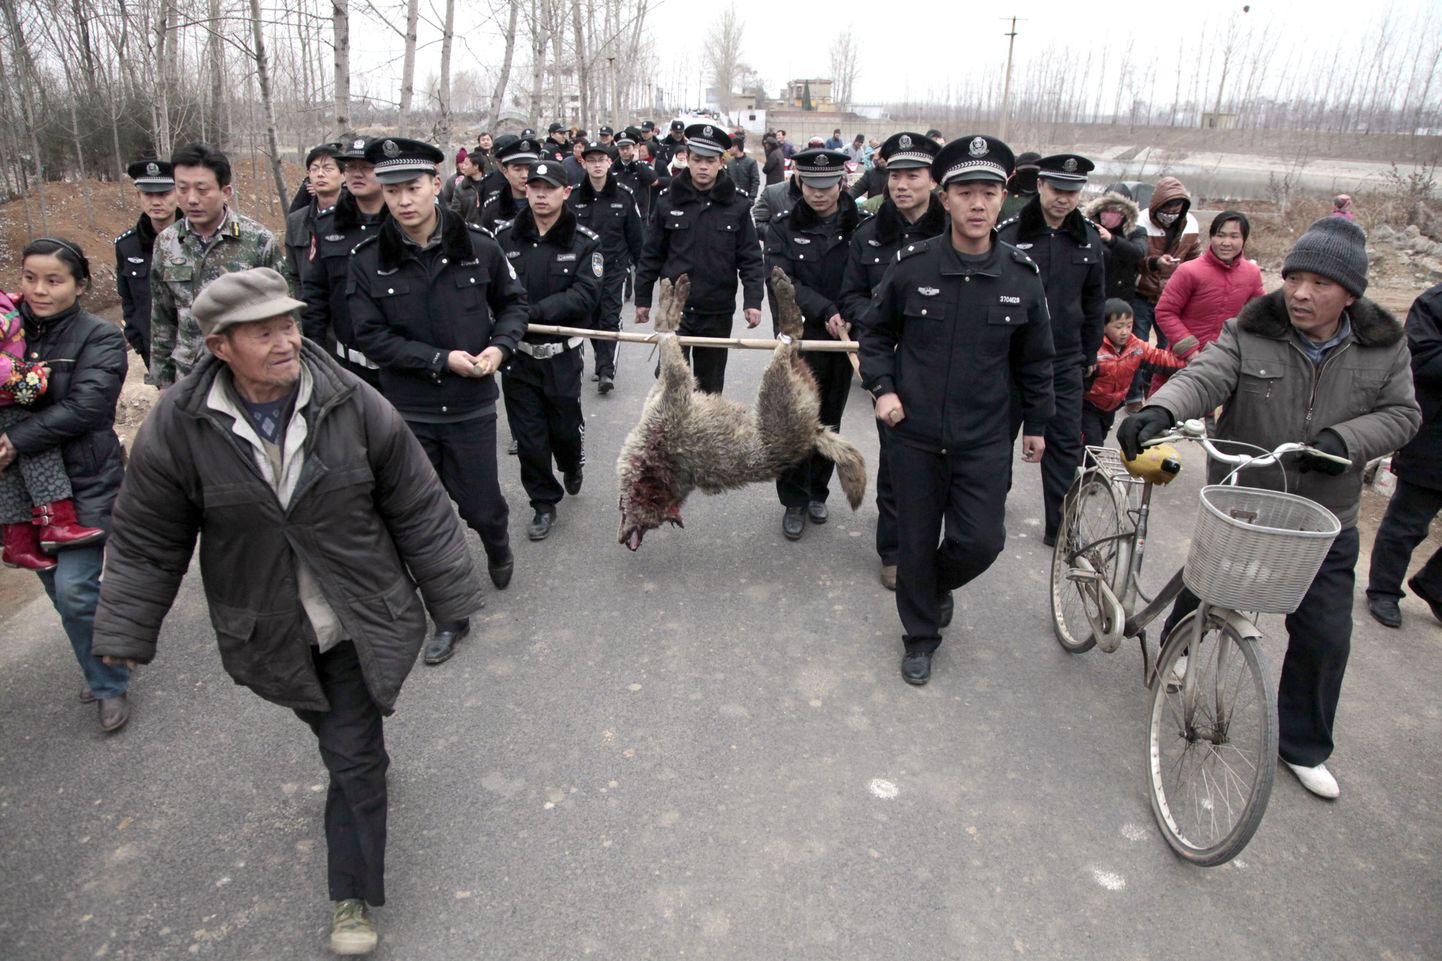 Hiinas Zaozhuangis toimus politseioperatsioon, mille käigus tabati tapjahunt